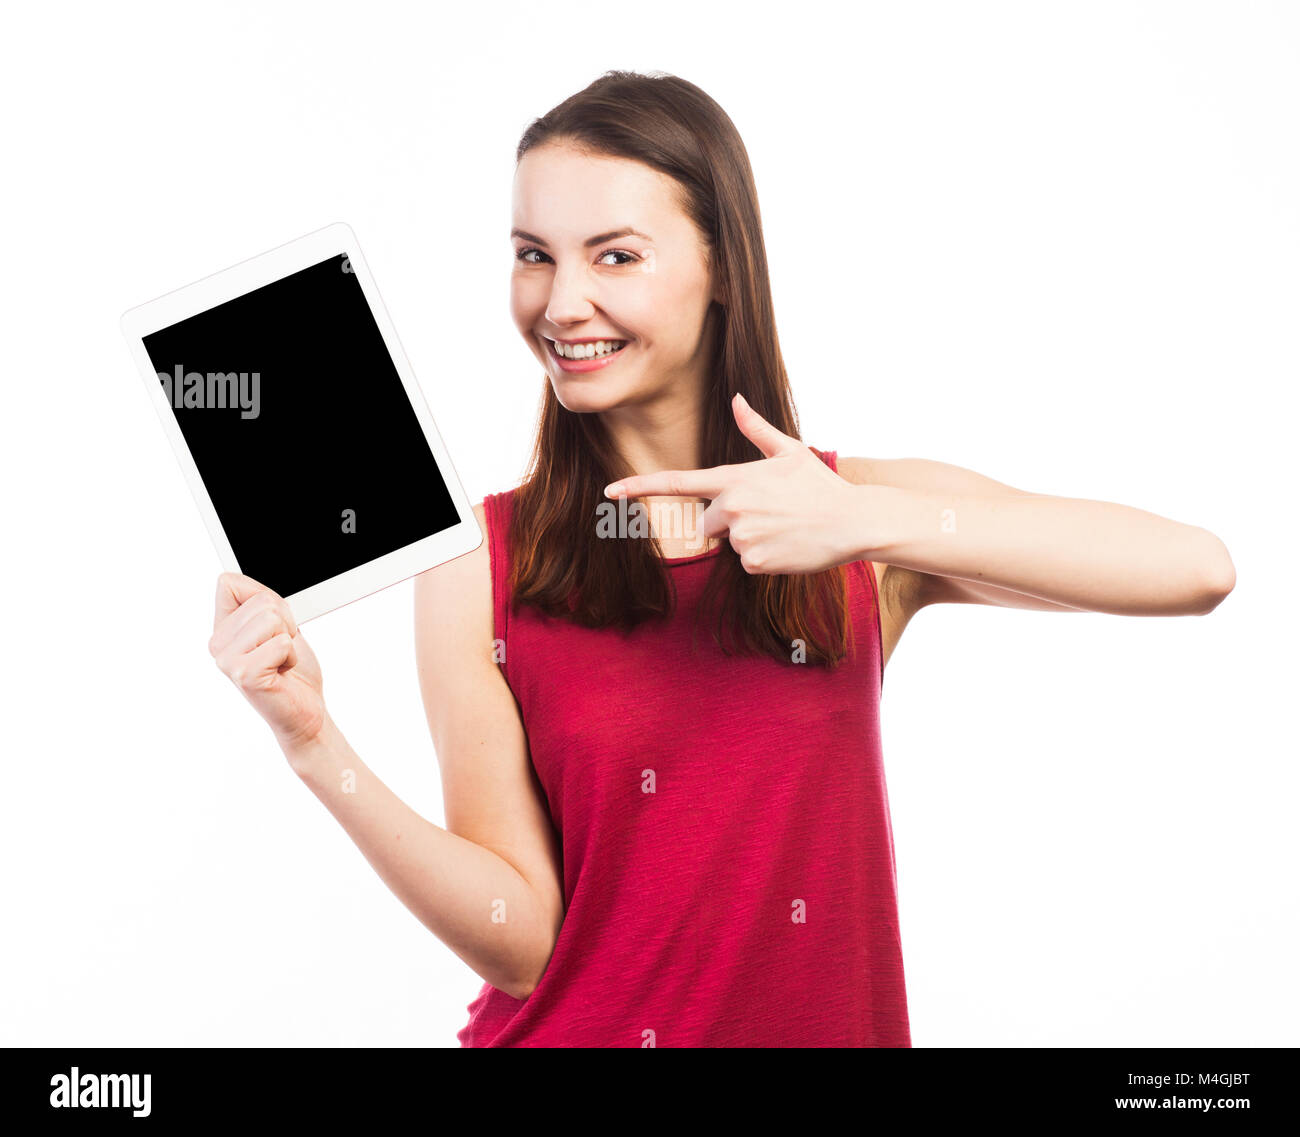 Mujer alegre celebración y mostrando la pantalla en blanco de una tableta electrónica, aislado en blanco Foto de stock